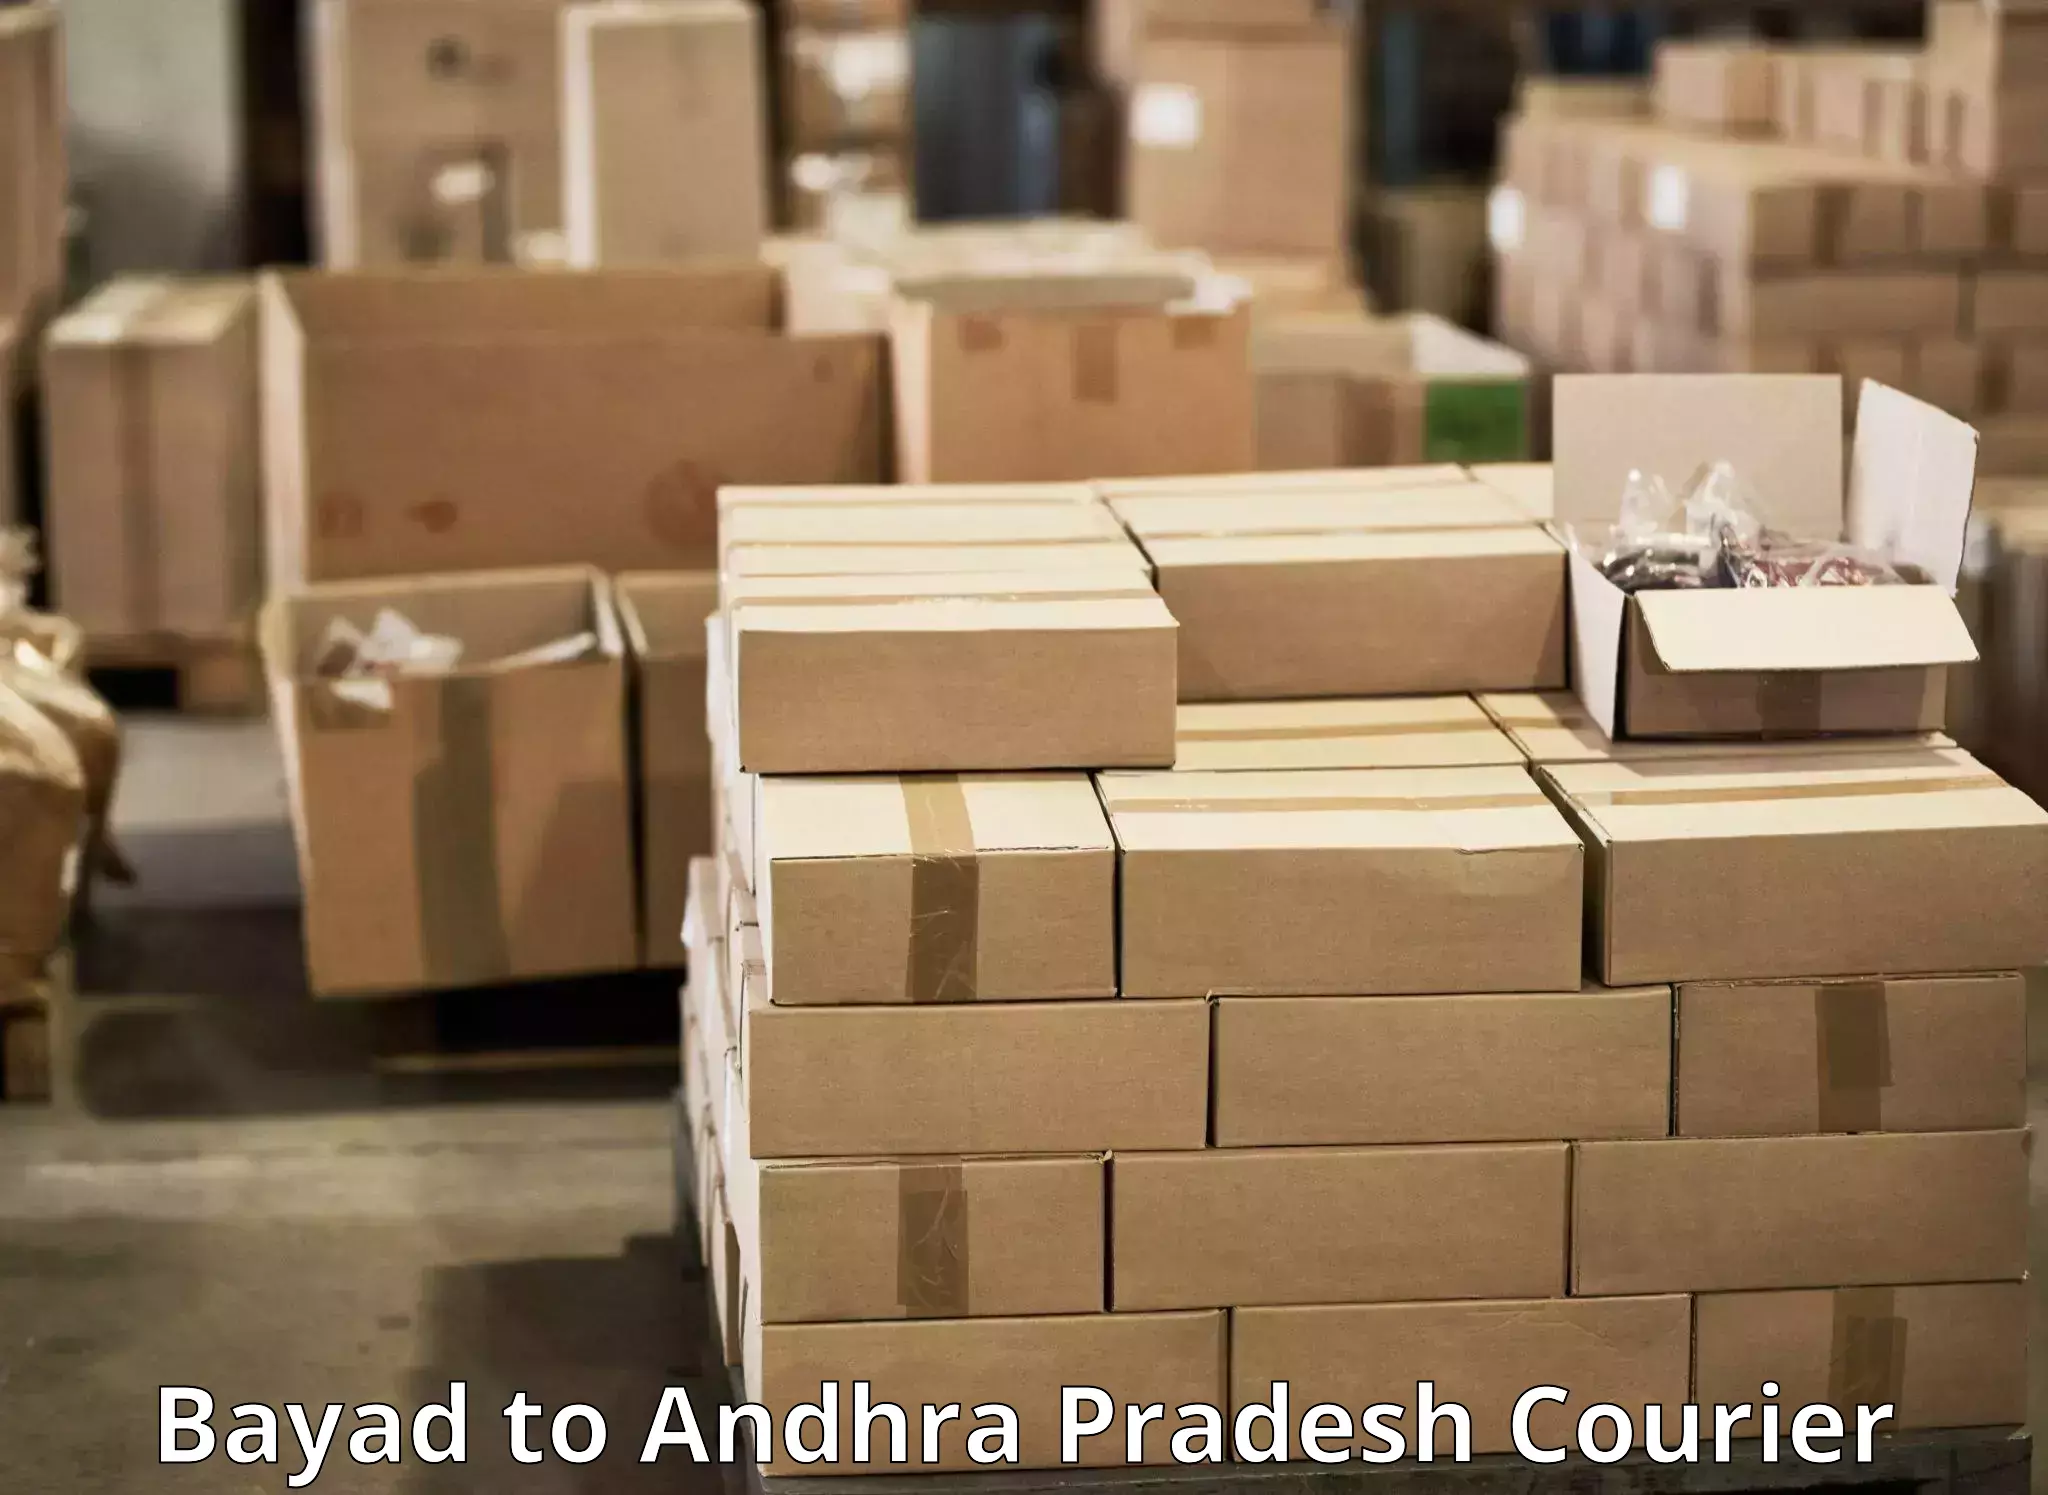 Doorstep delivery service Bayad to Gudivada